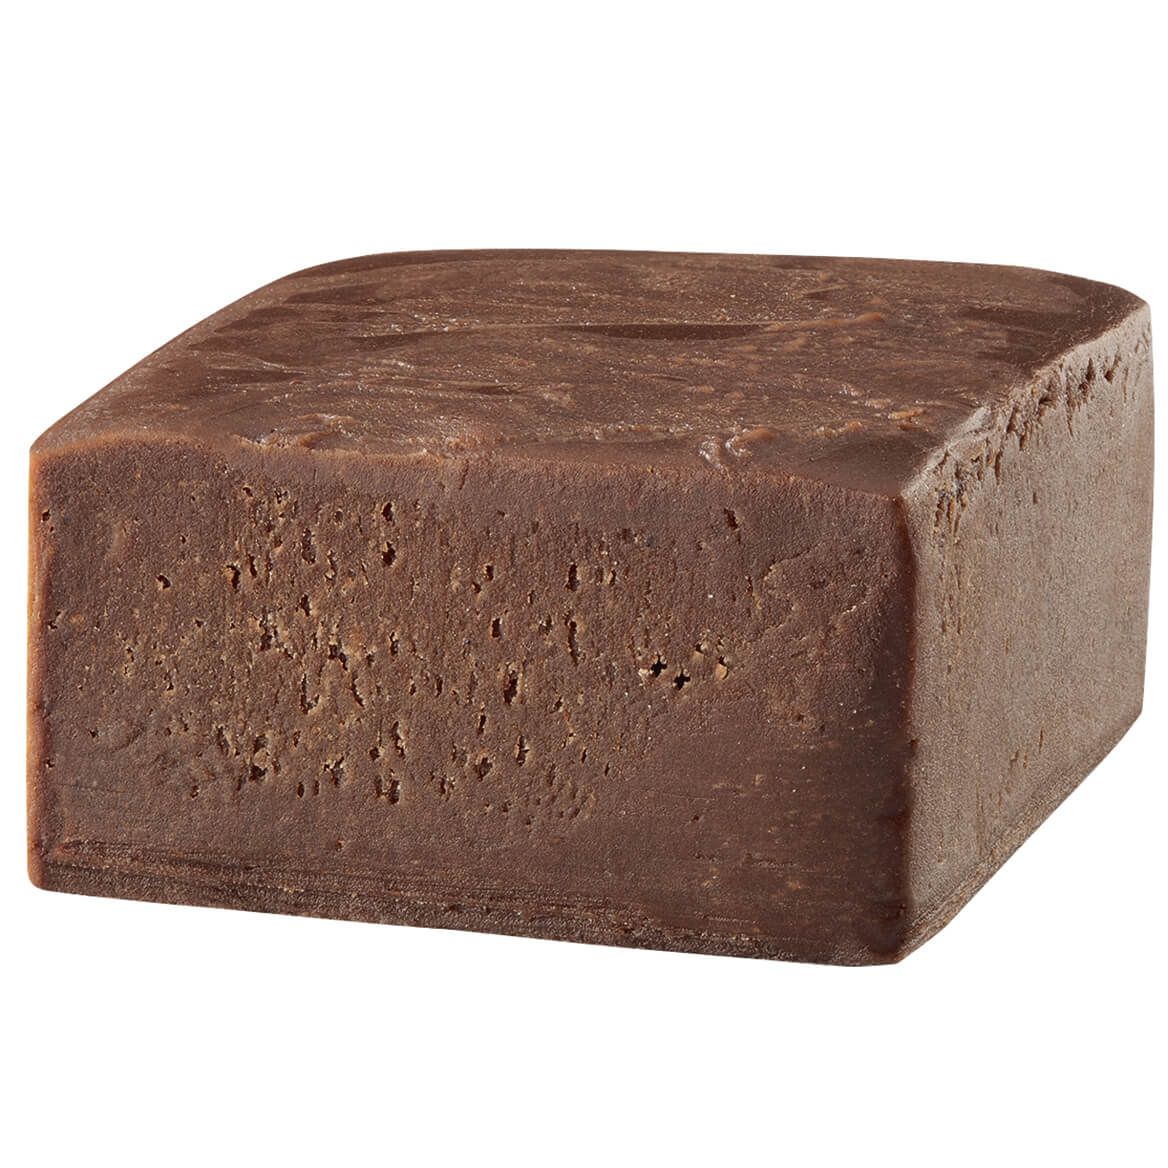 Mrs. Kimball's Old Fashioned Chocolate Fudge, 12 oz. + '-' + 374420